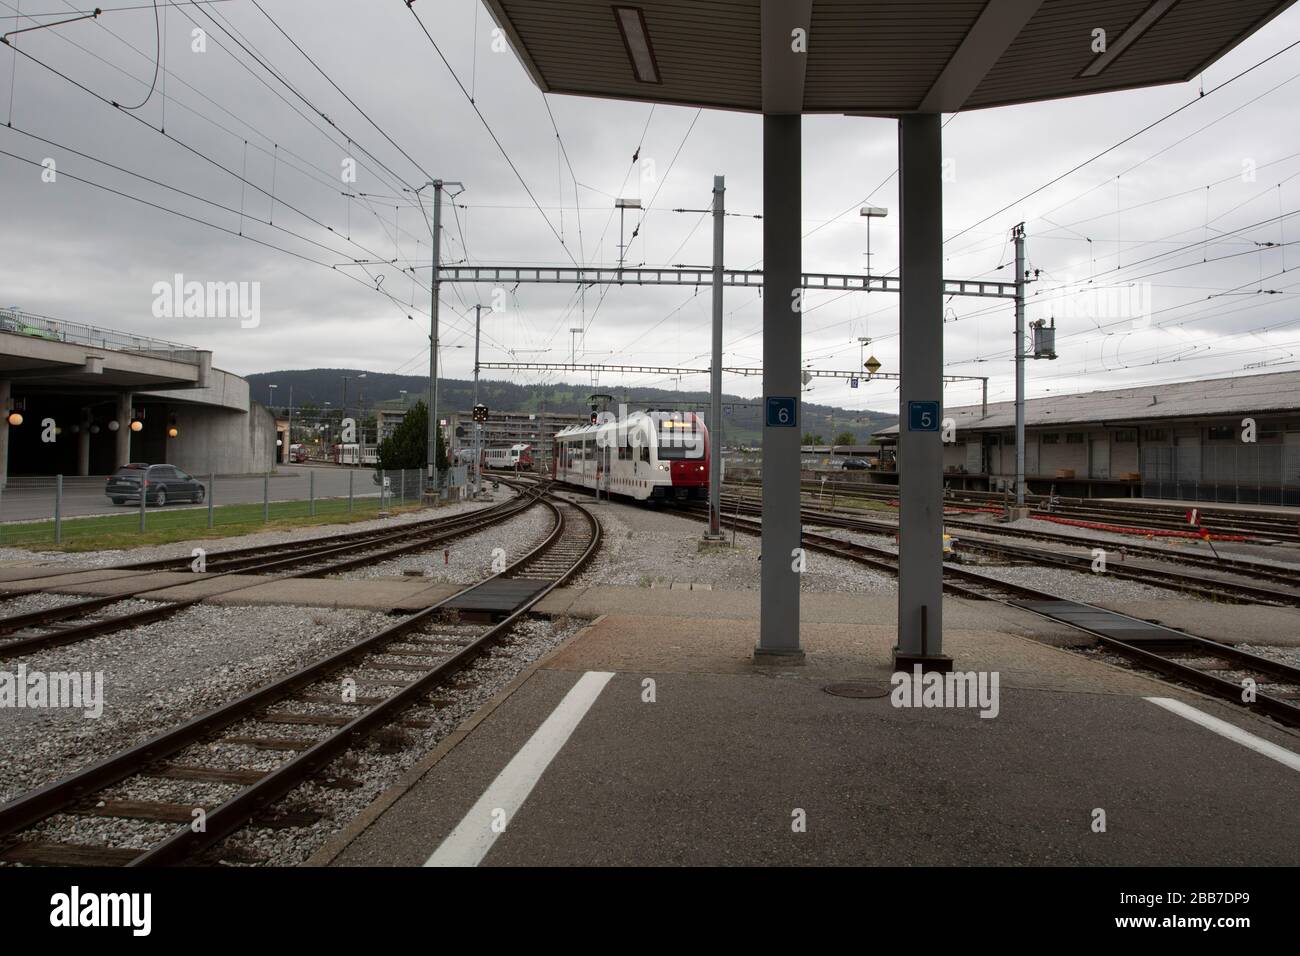 Gare suisse bulle, Gruyère dans le canton de Fribourg, Suisse, Europe, 08/09/2019, Gare suisse bulle , fervents. Banque D'Images